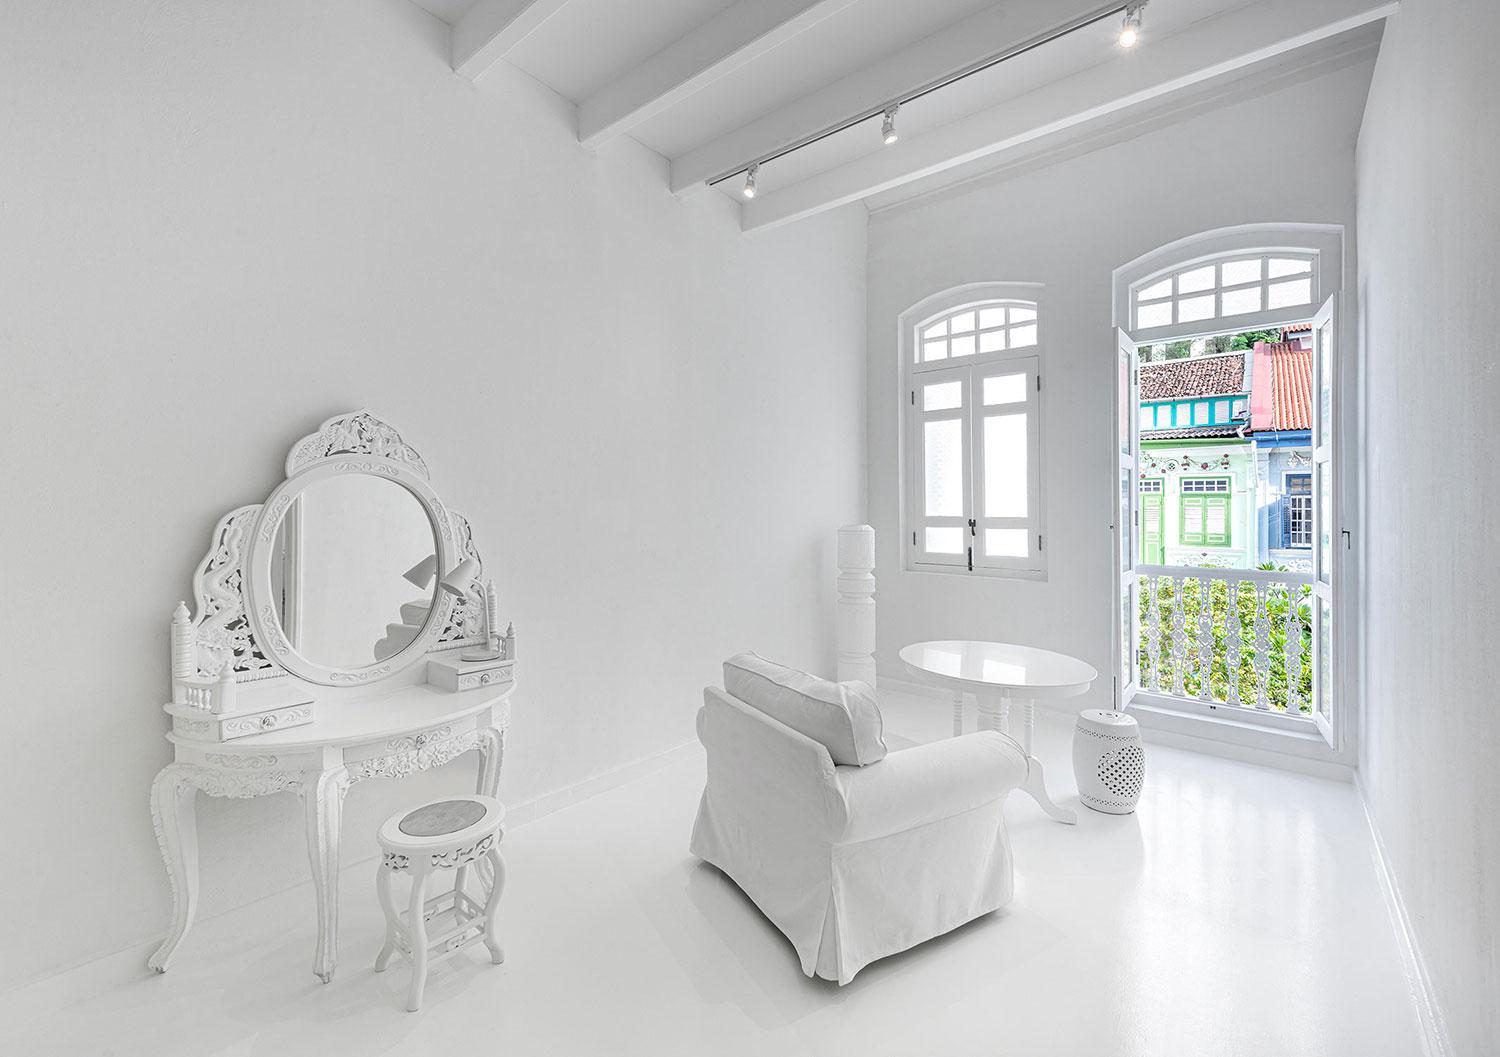 一起為未來寫下精彩歷史，新加坡歷史老屋變身創意共同住宅